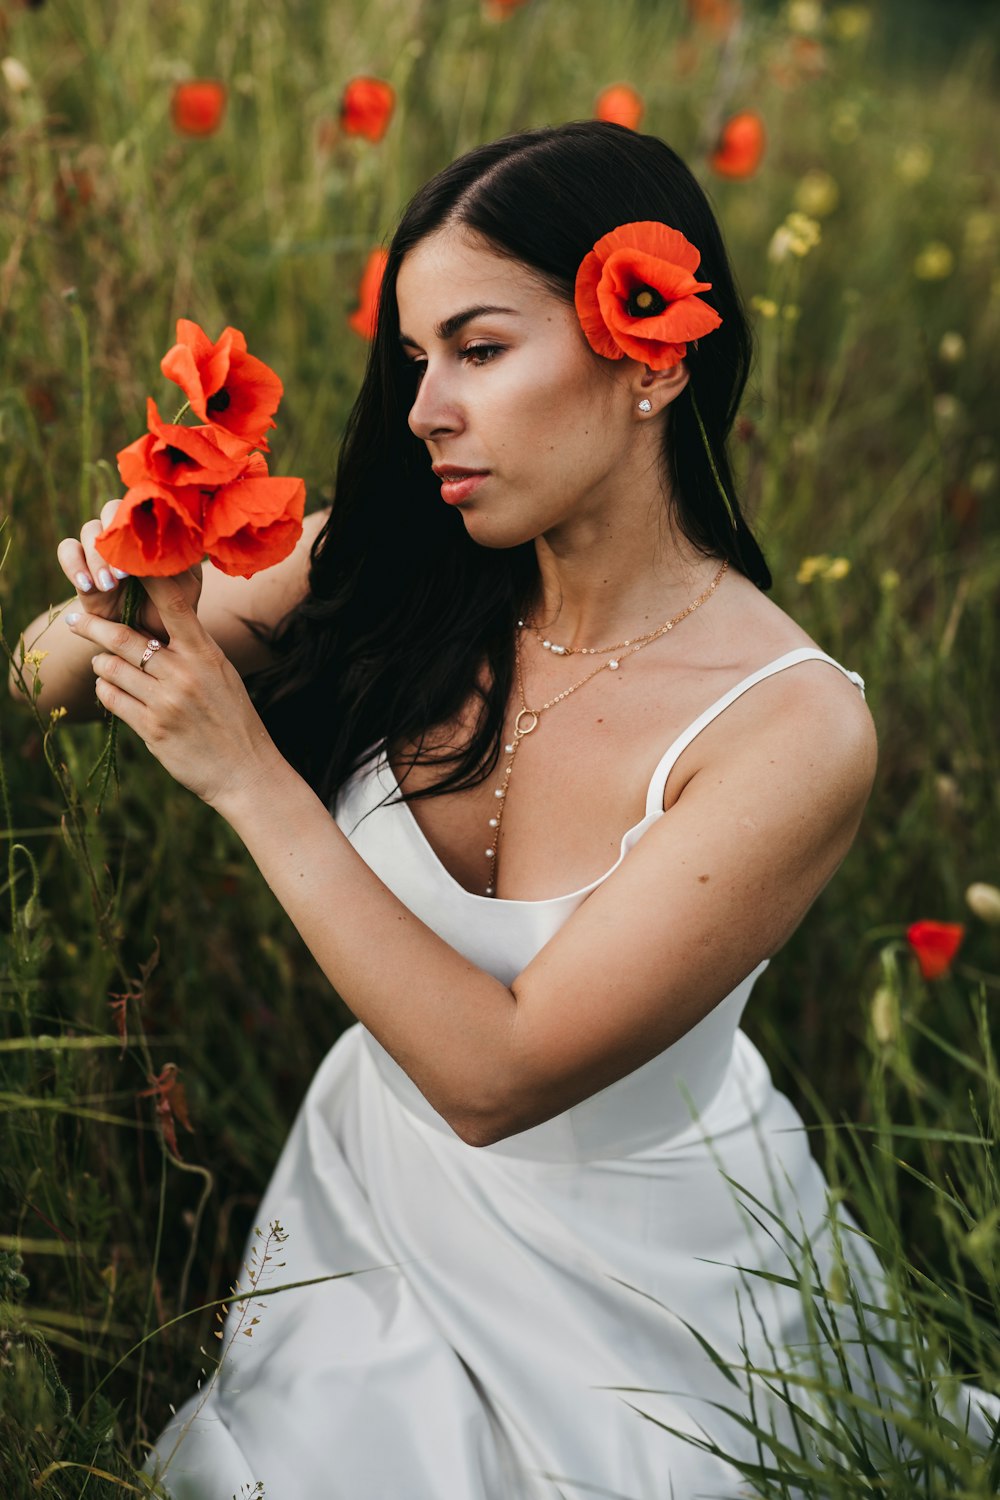 Eine Frau in einem weißen Kleid, die Blumen hält